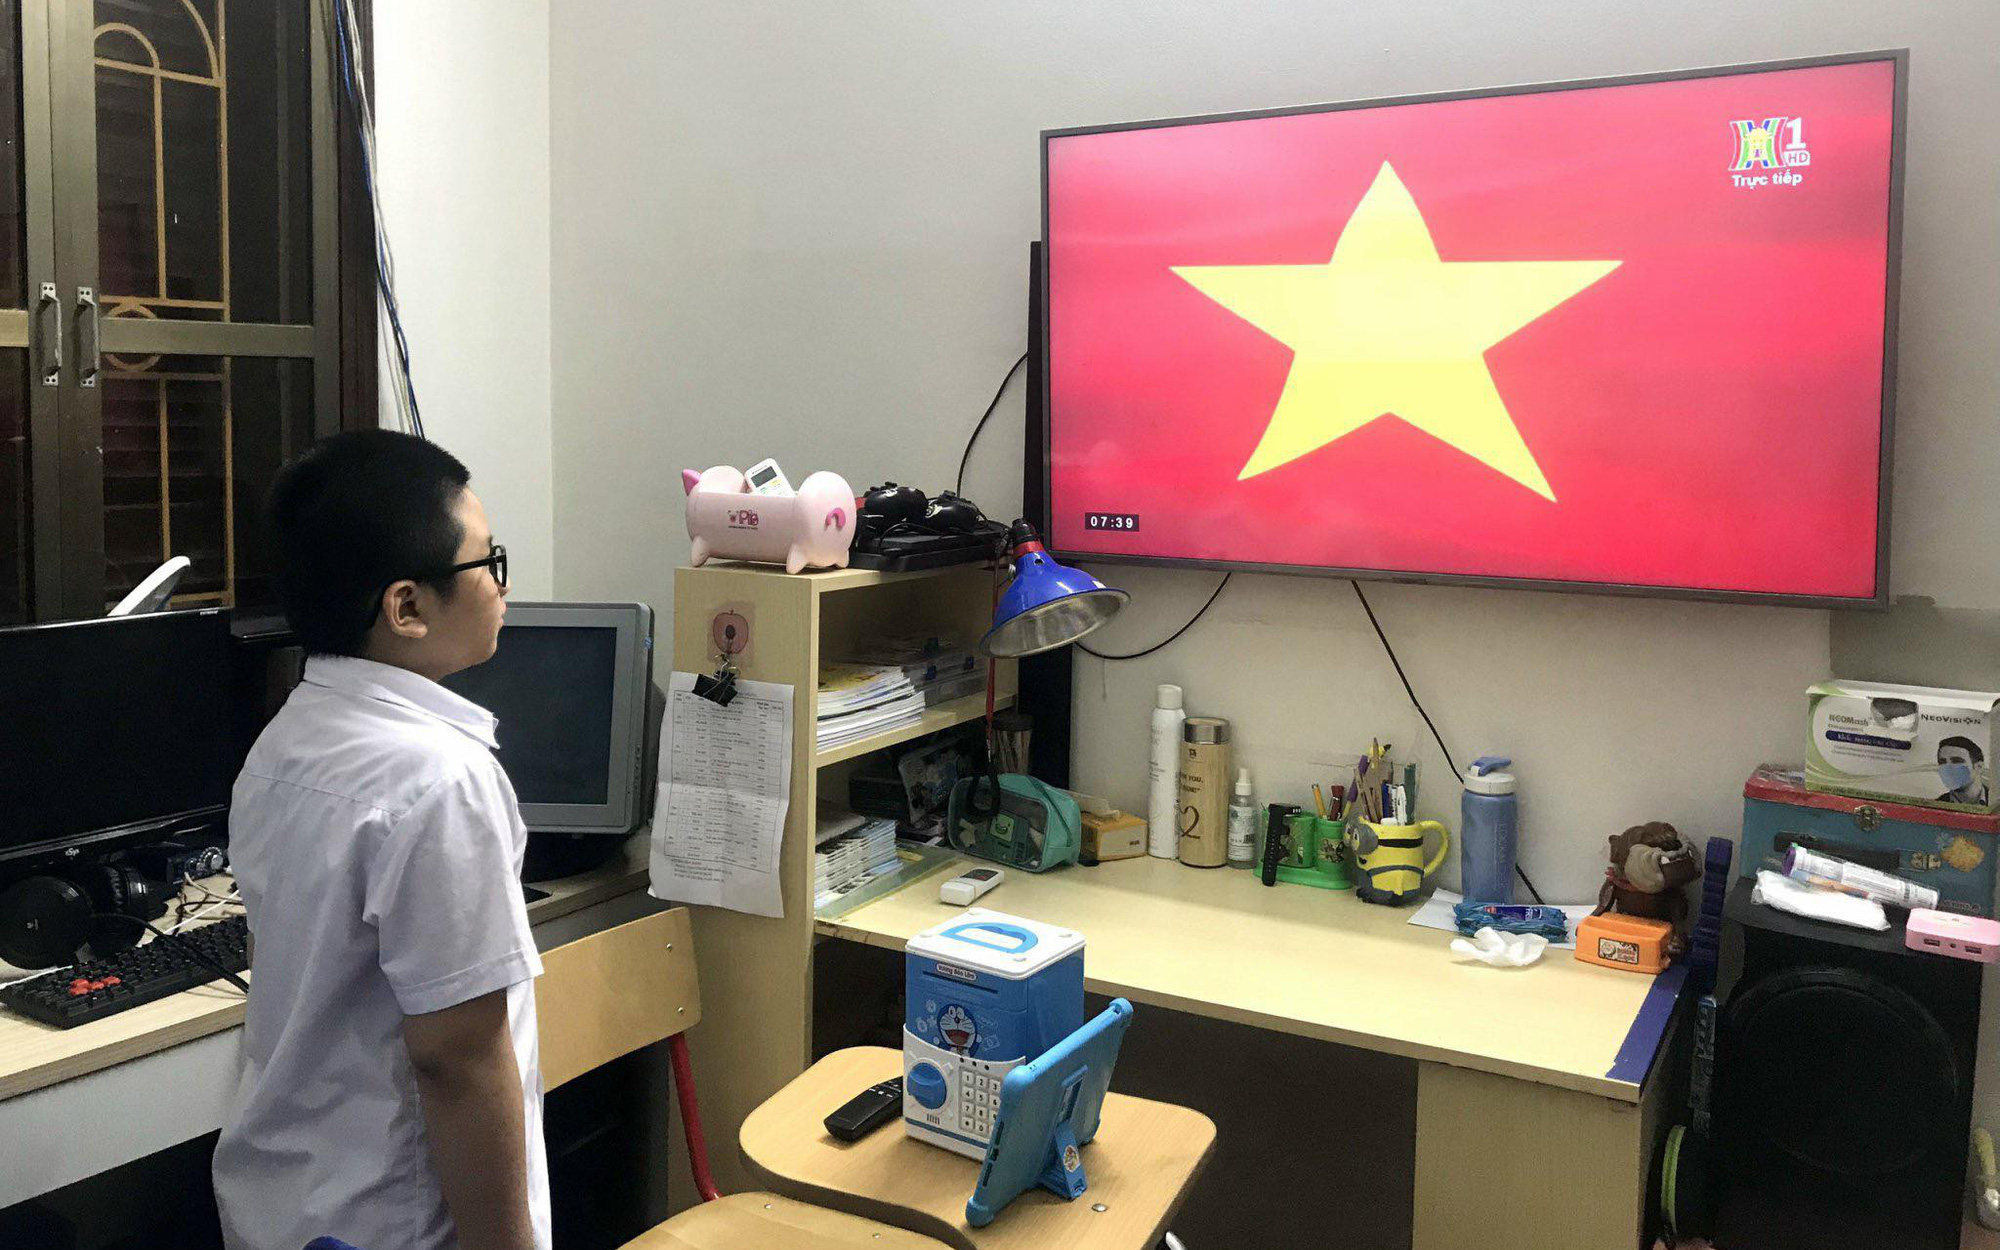 Toàn cảnh Lễ khai giảng nhìn qua màn hình của năm học 2021-2022 tại Hà Nội